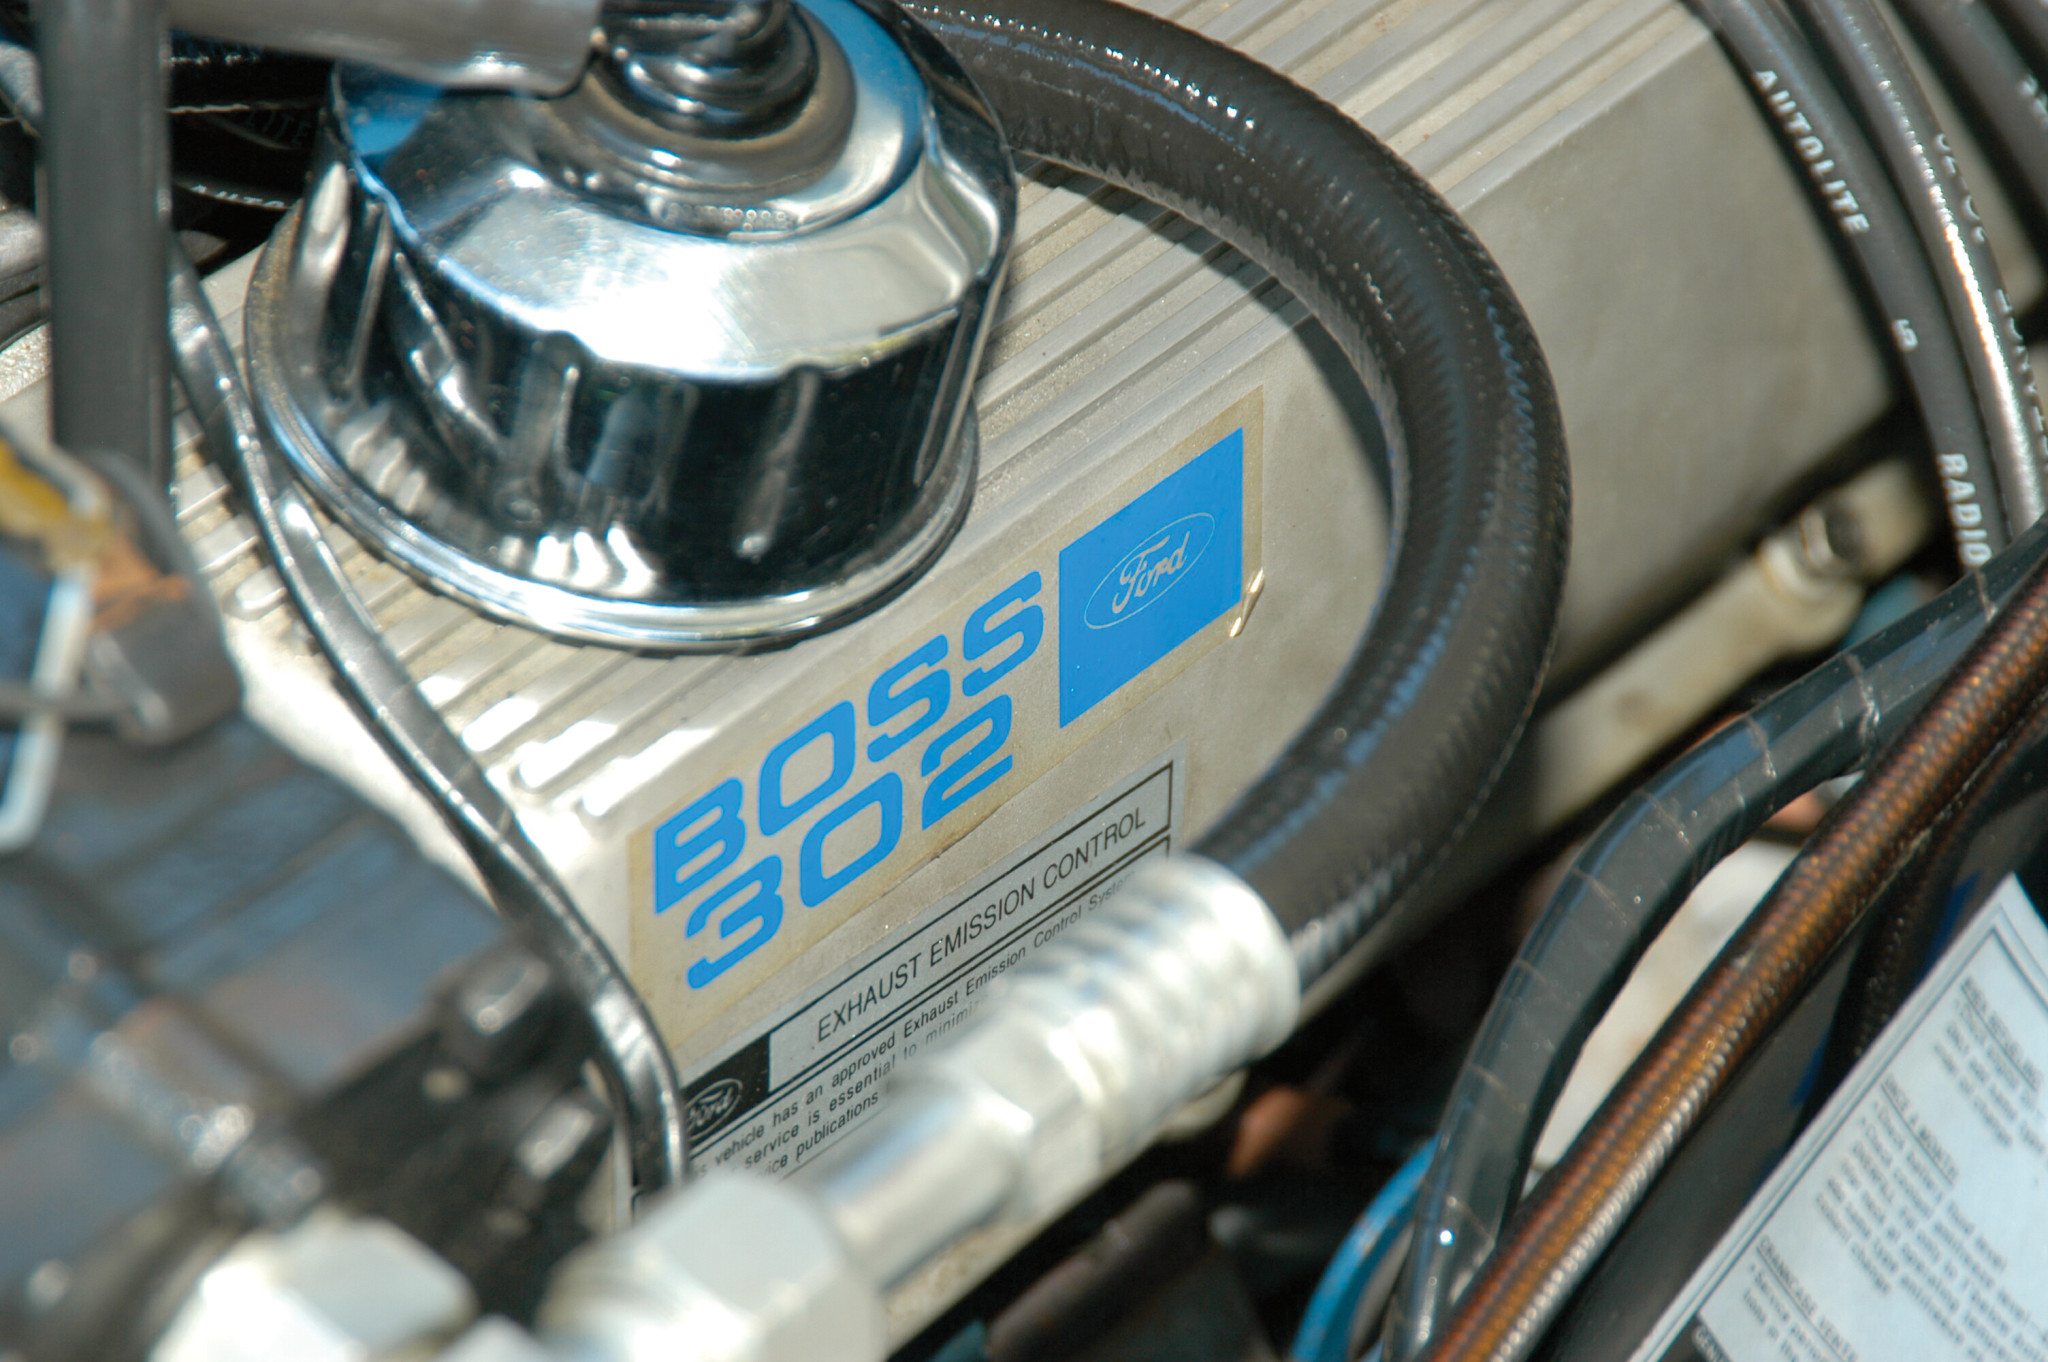 1970 Ford Boss 302 V8 Engine